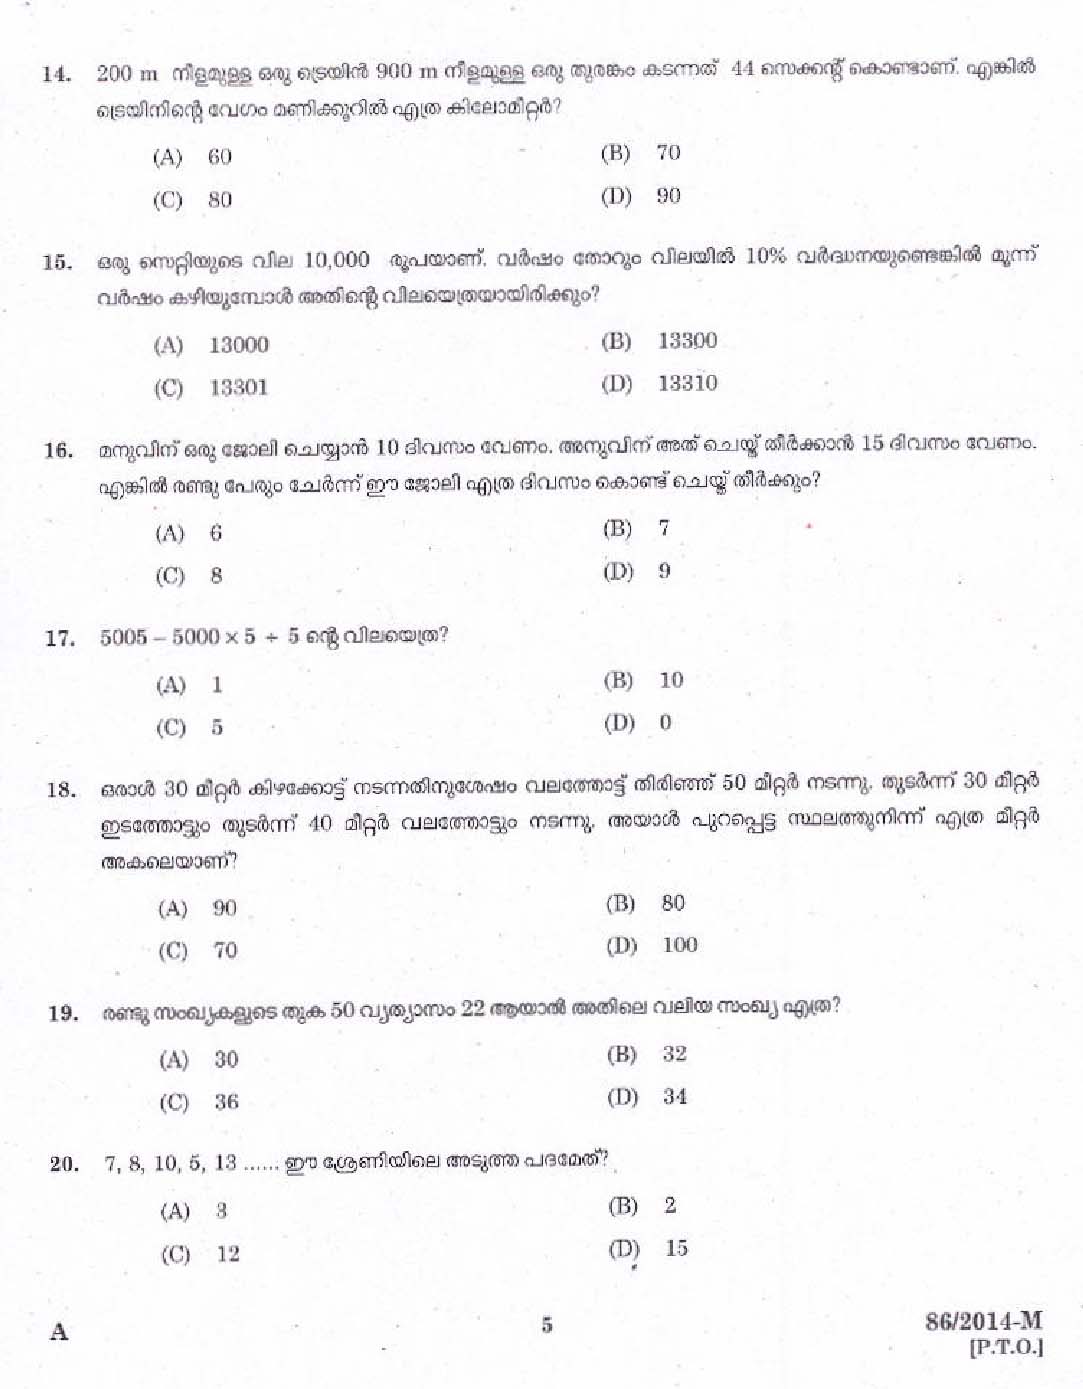 KPSC Village Extension Officer Grade II Exam 2014 Code 862014 M 3